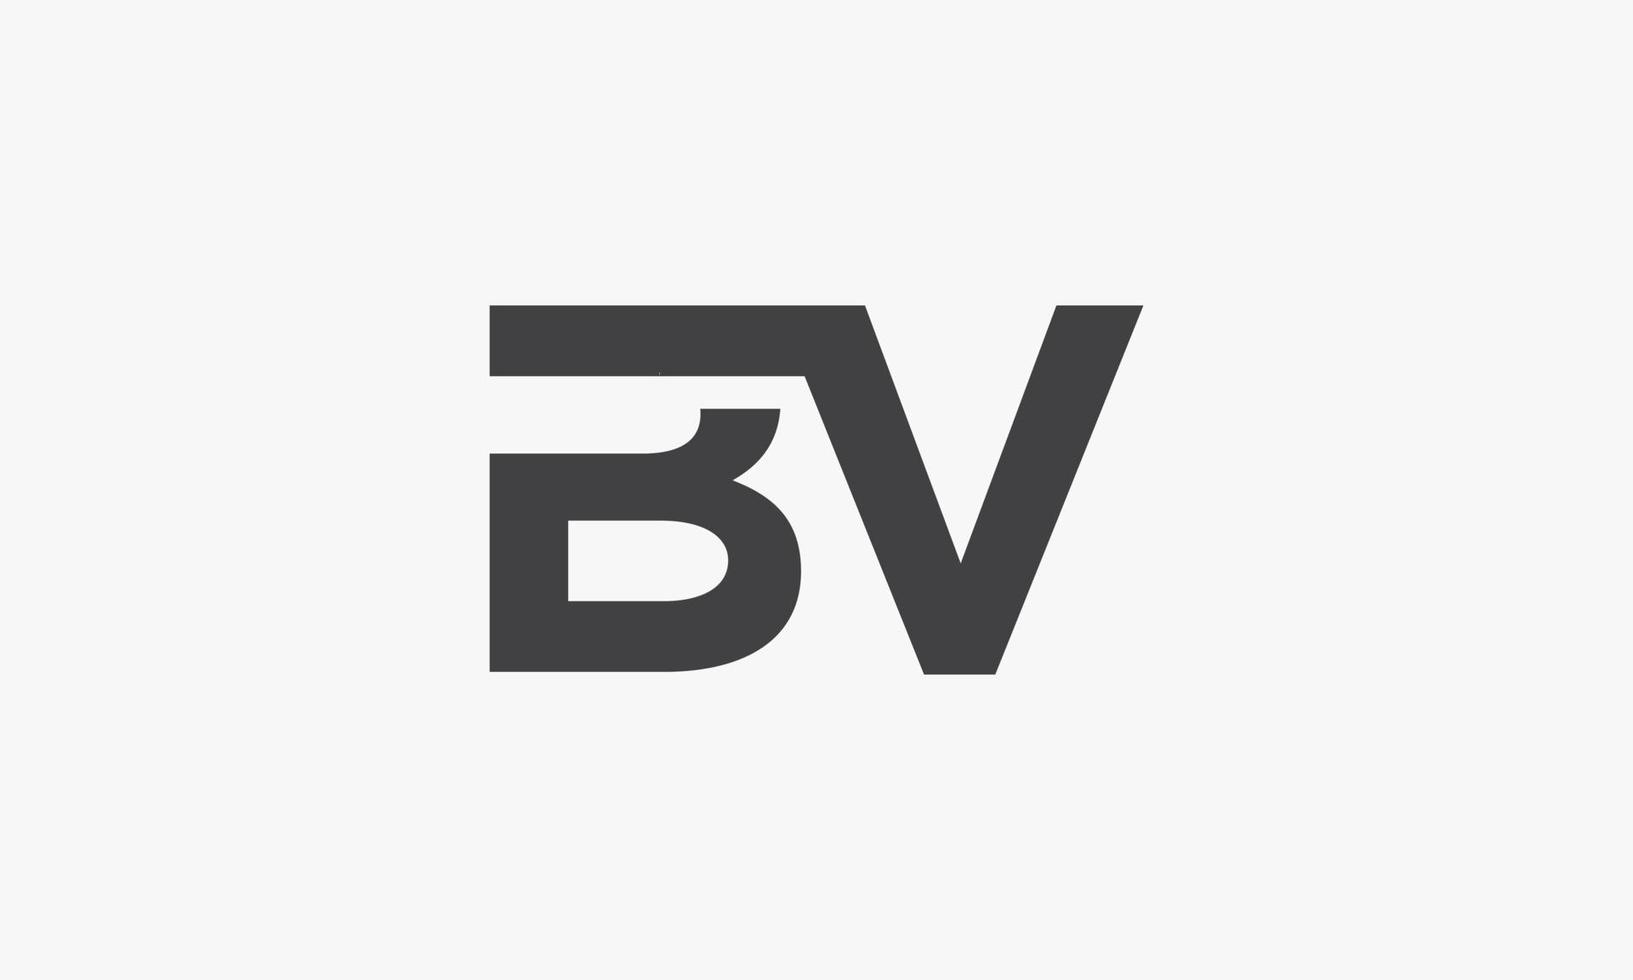 bv carta logo conectado concepto aislado sobre fondo blanco. vector